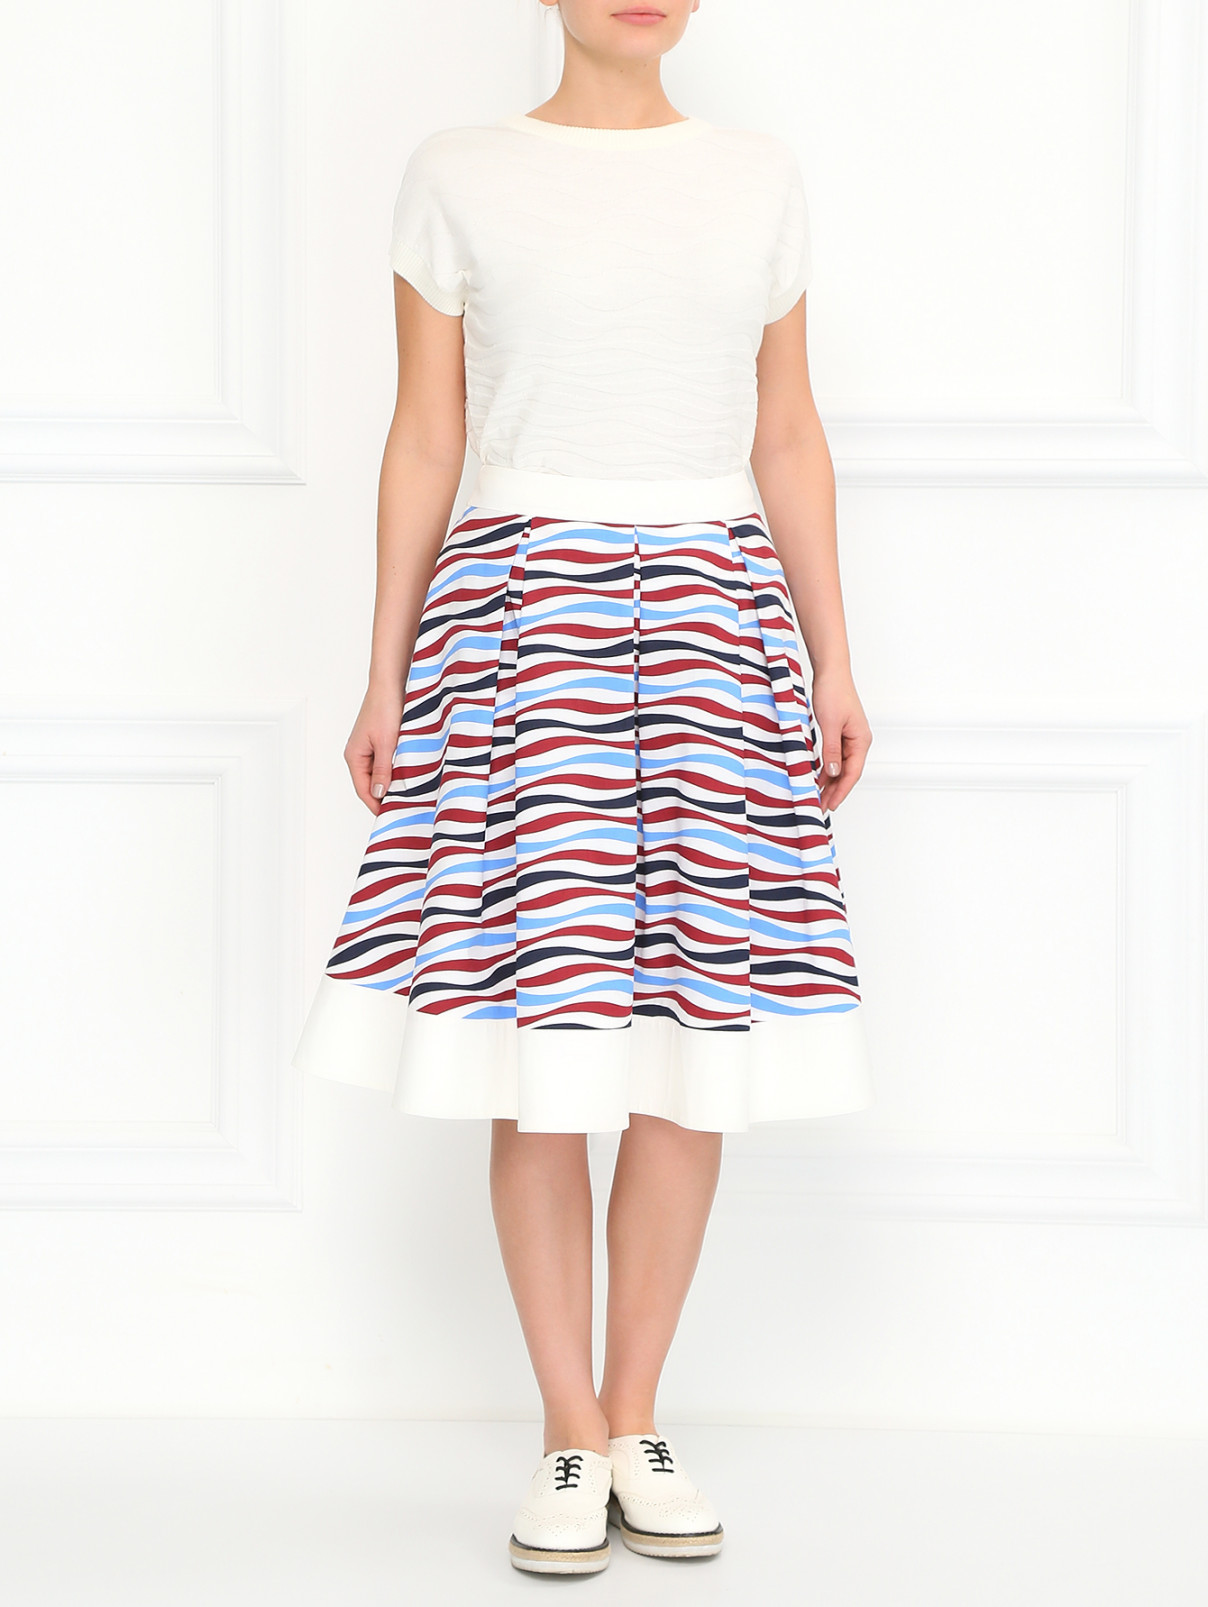 Хлопковая юбка с принтом BOSCO  –  Модель Общий вид  – Цвет:  Белый